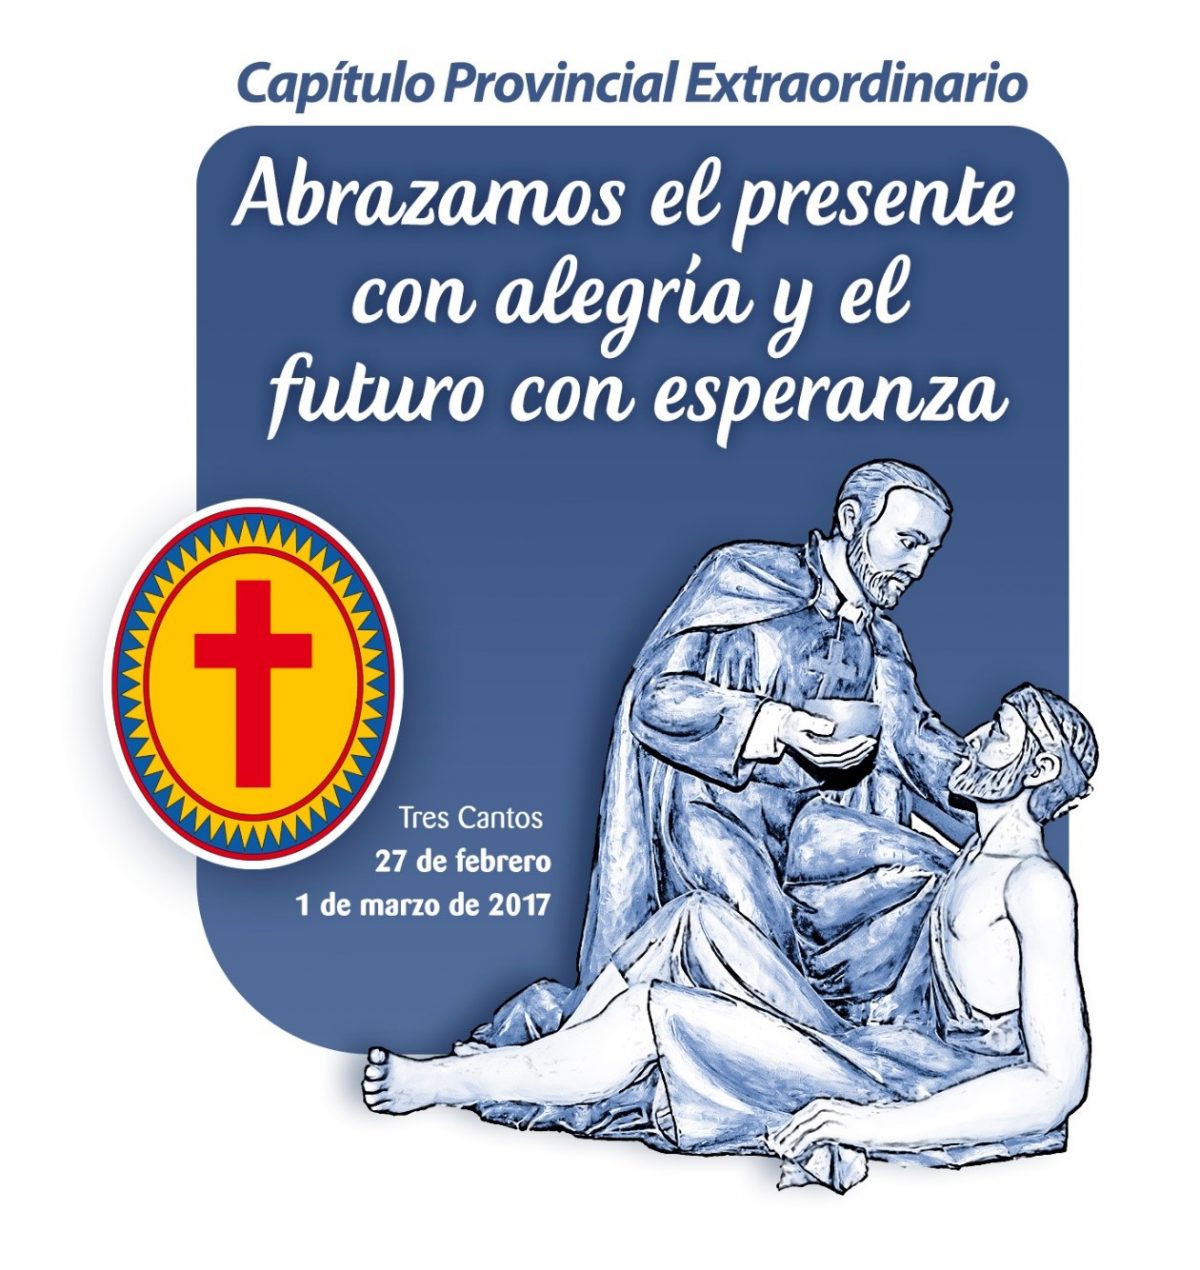 Los Religiosos Camilos de la provincia Española celebrarán su Capítulo Provincial Extraordinario